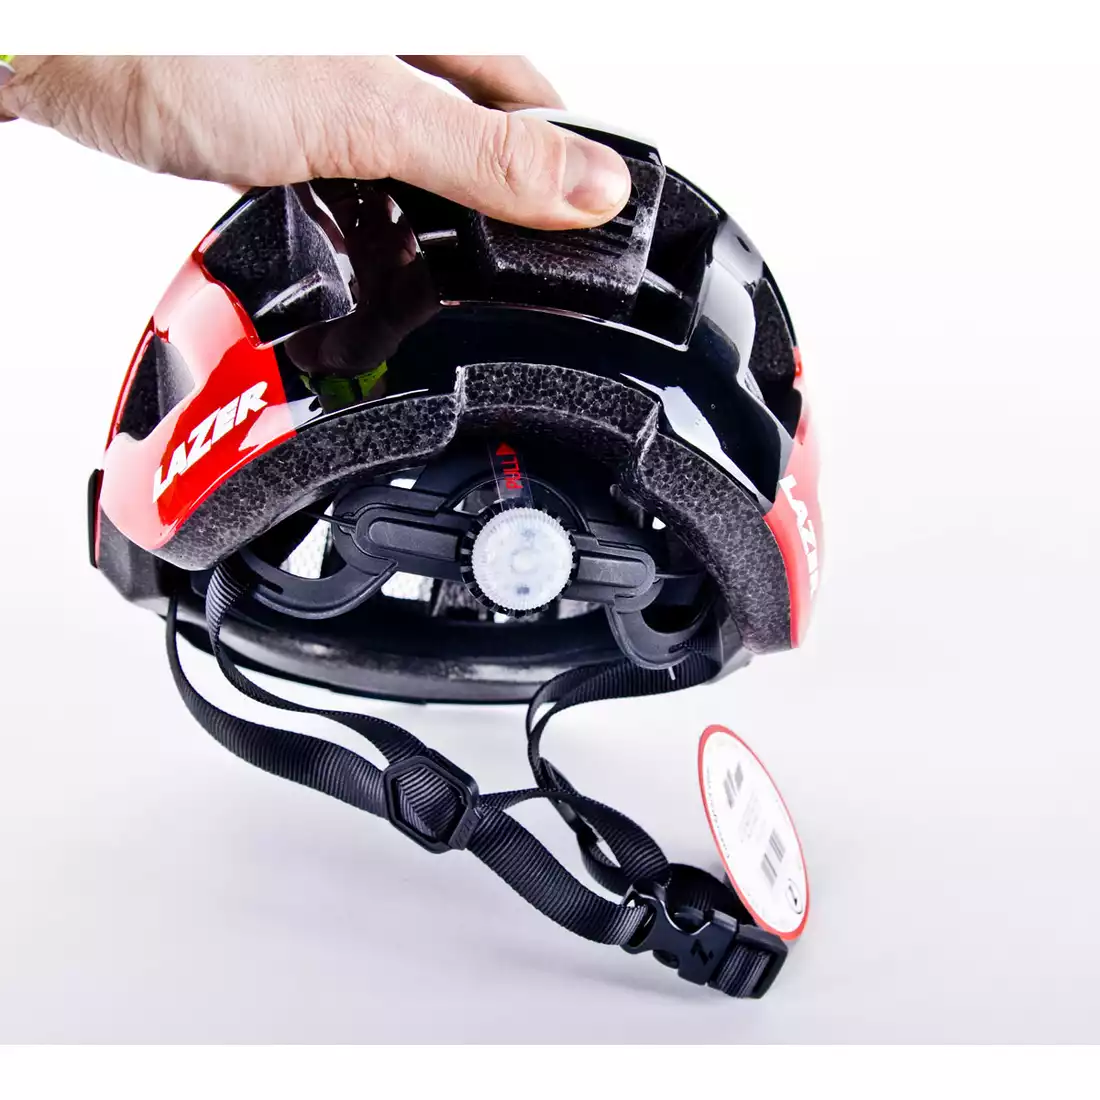 LAZER Compact DLX kask rowerowy LED siatka na owady czerwony czarny połysk